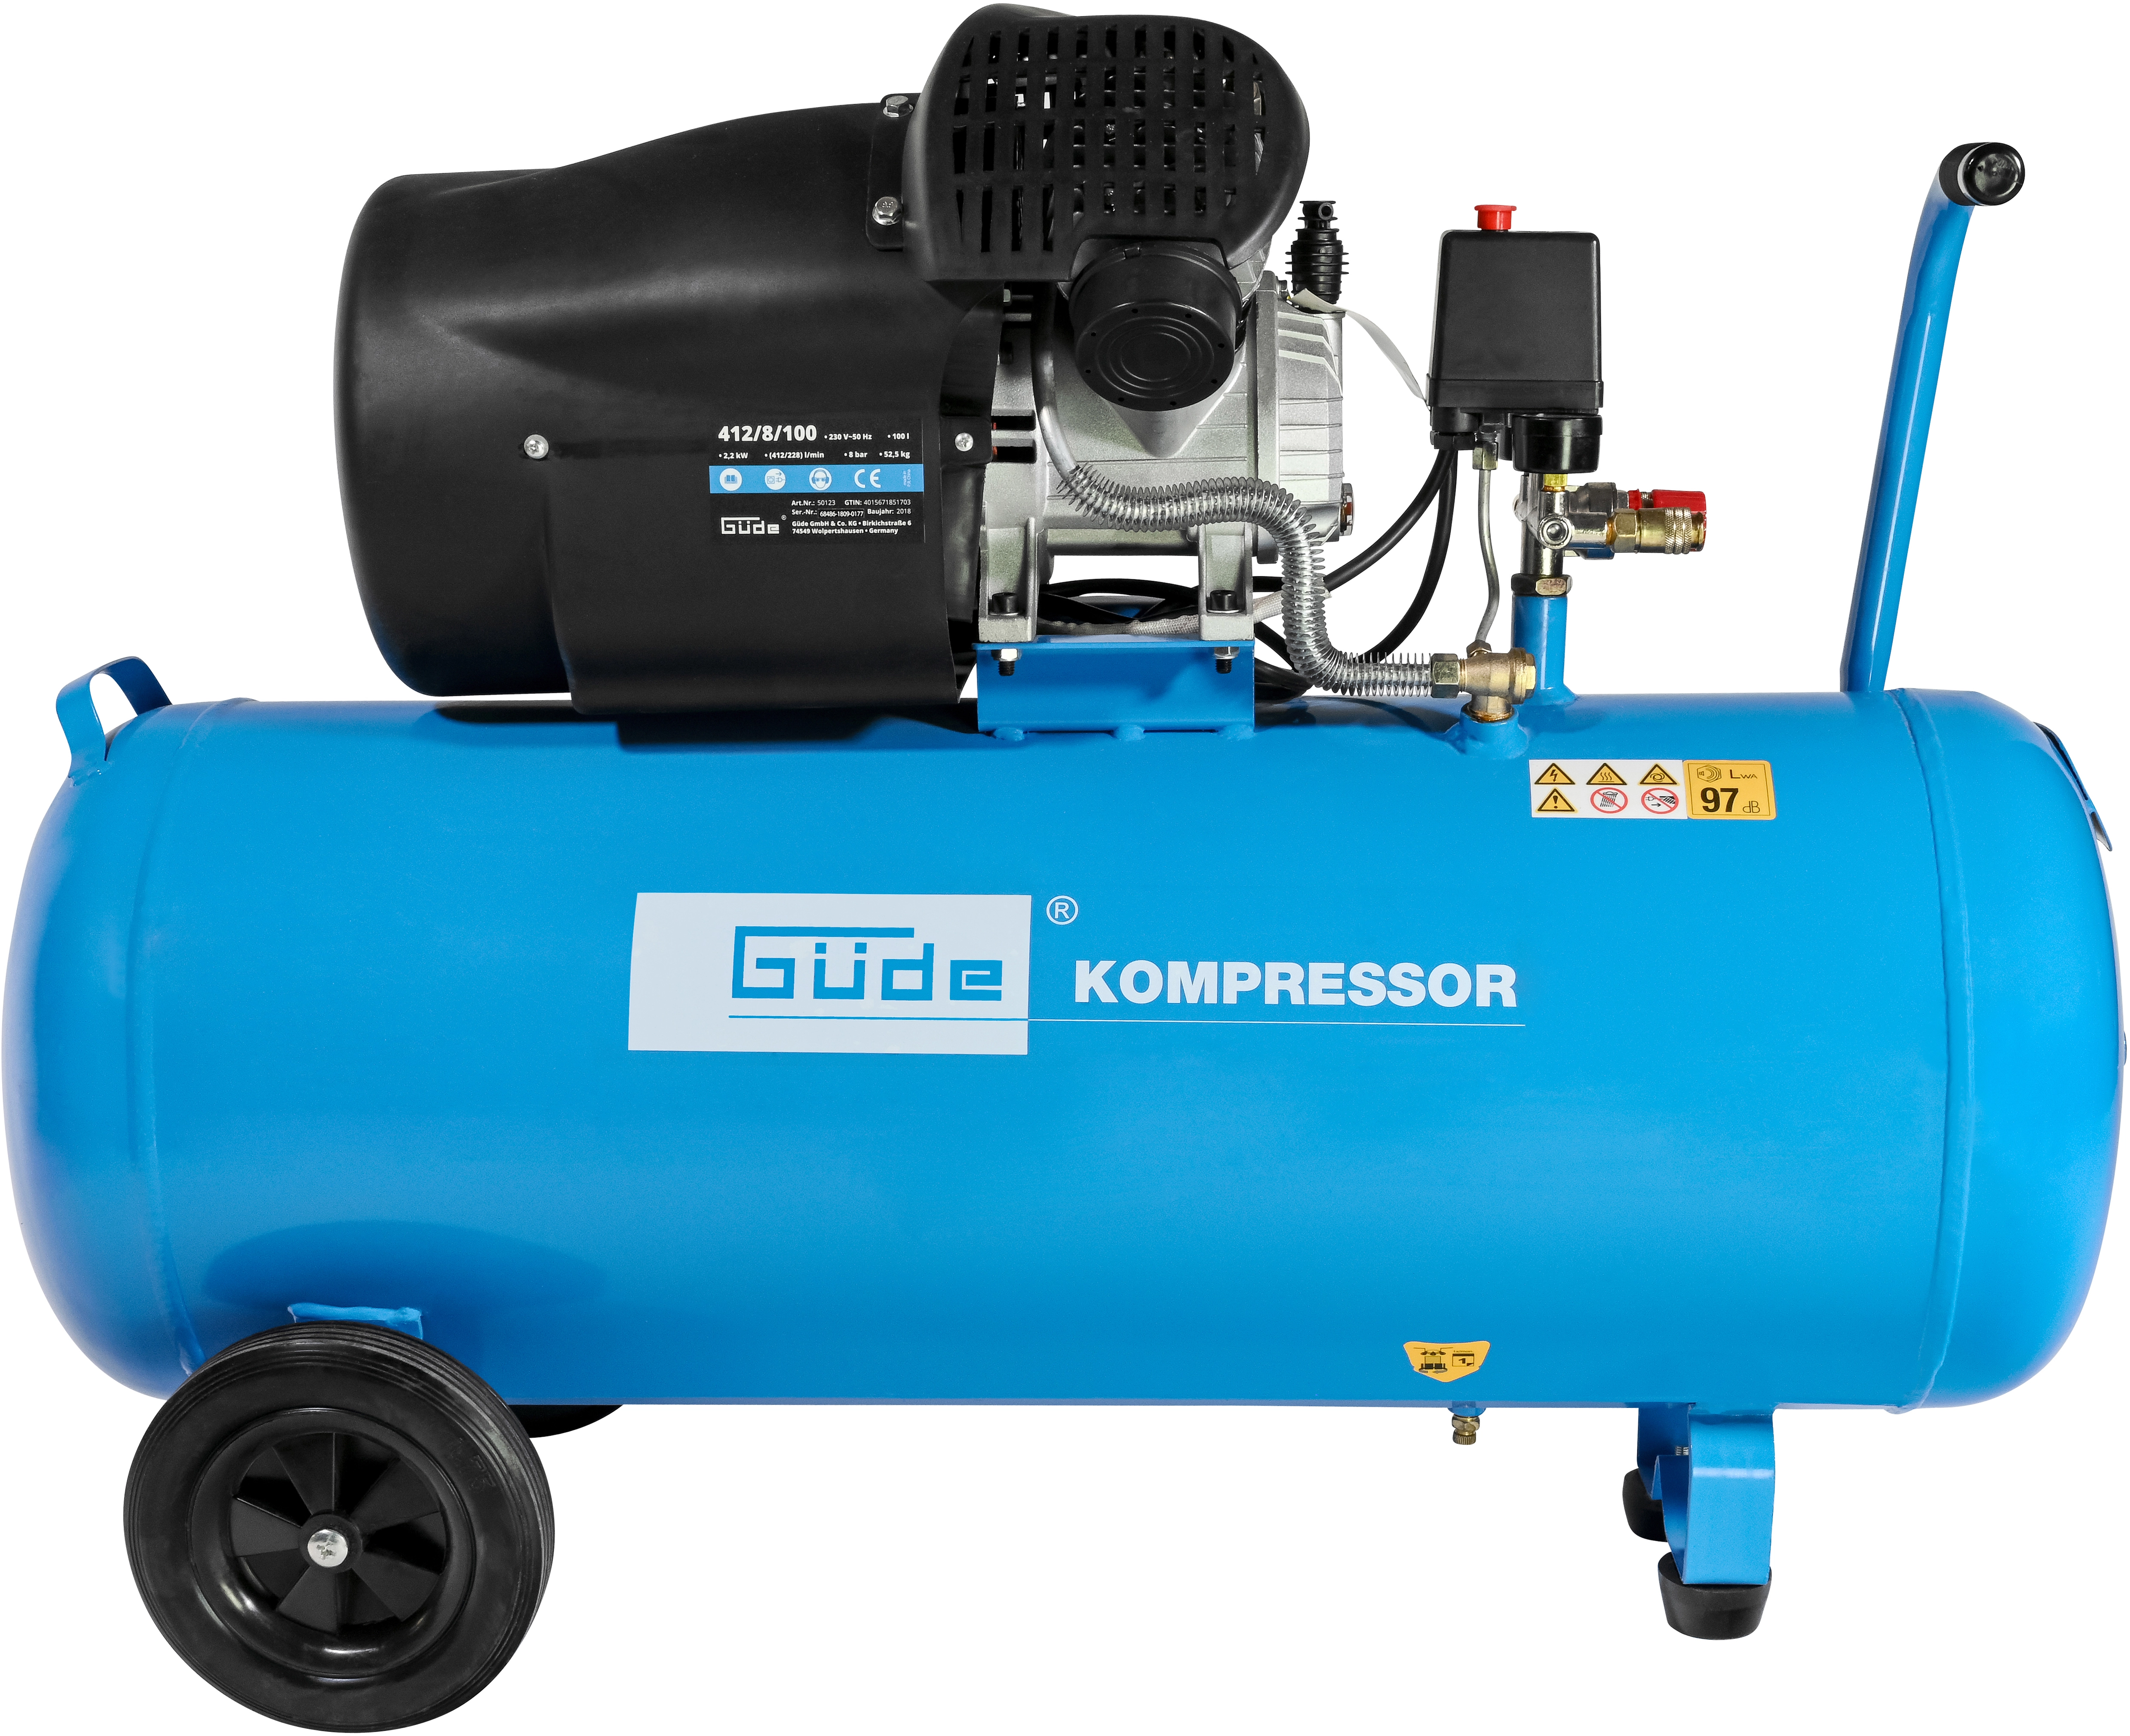 Kompressor-Aggregat, 2 Zylinder + Elektromotor, 8 Bar, 276 Ltr.